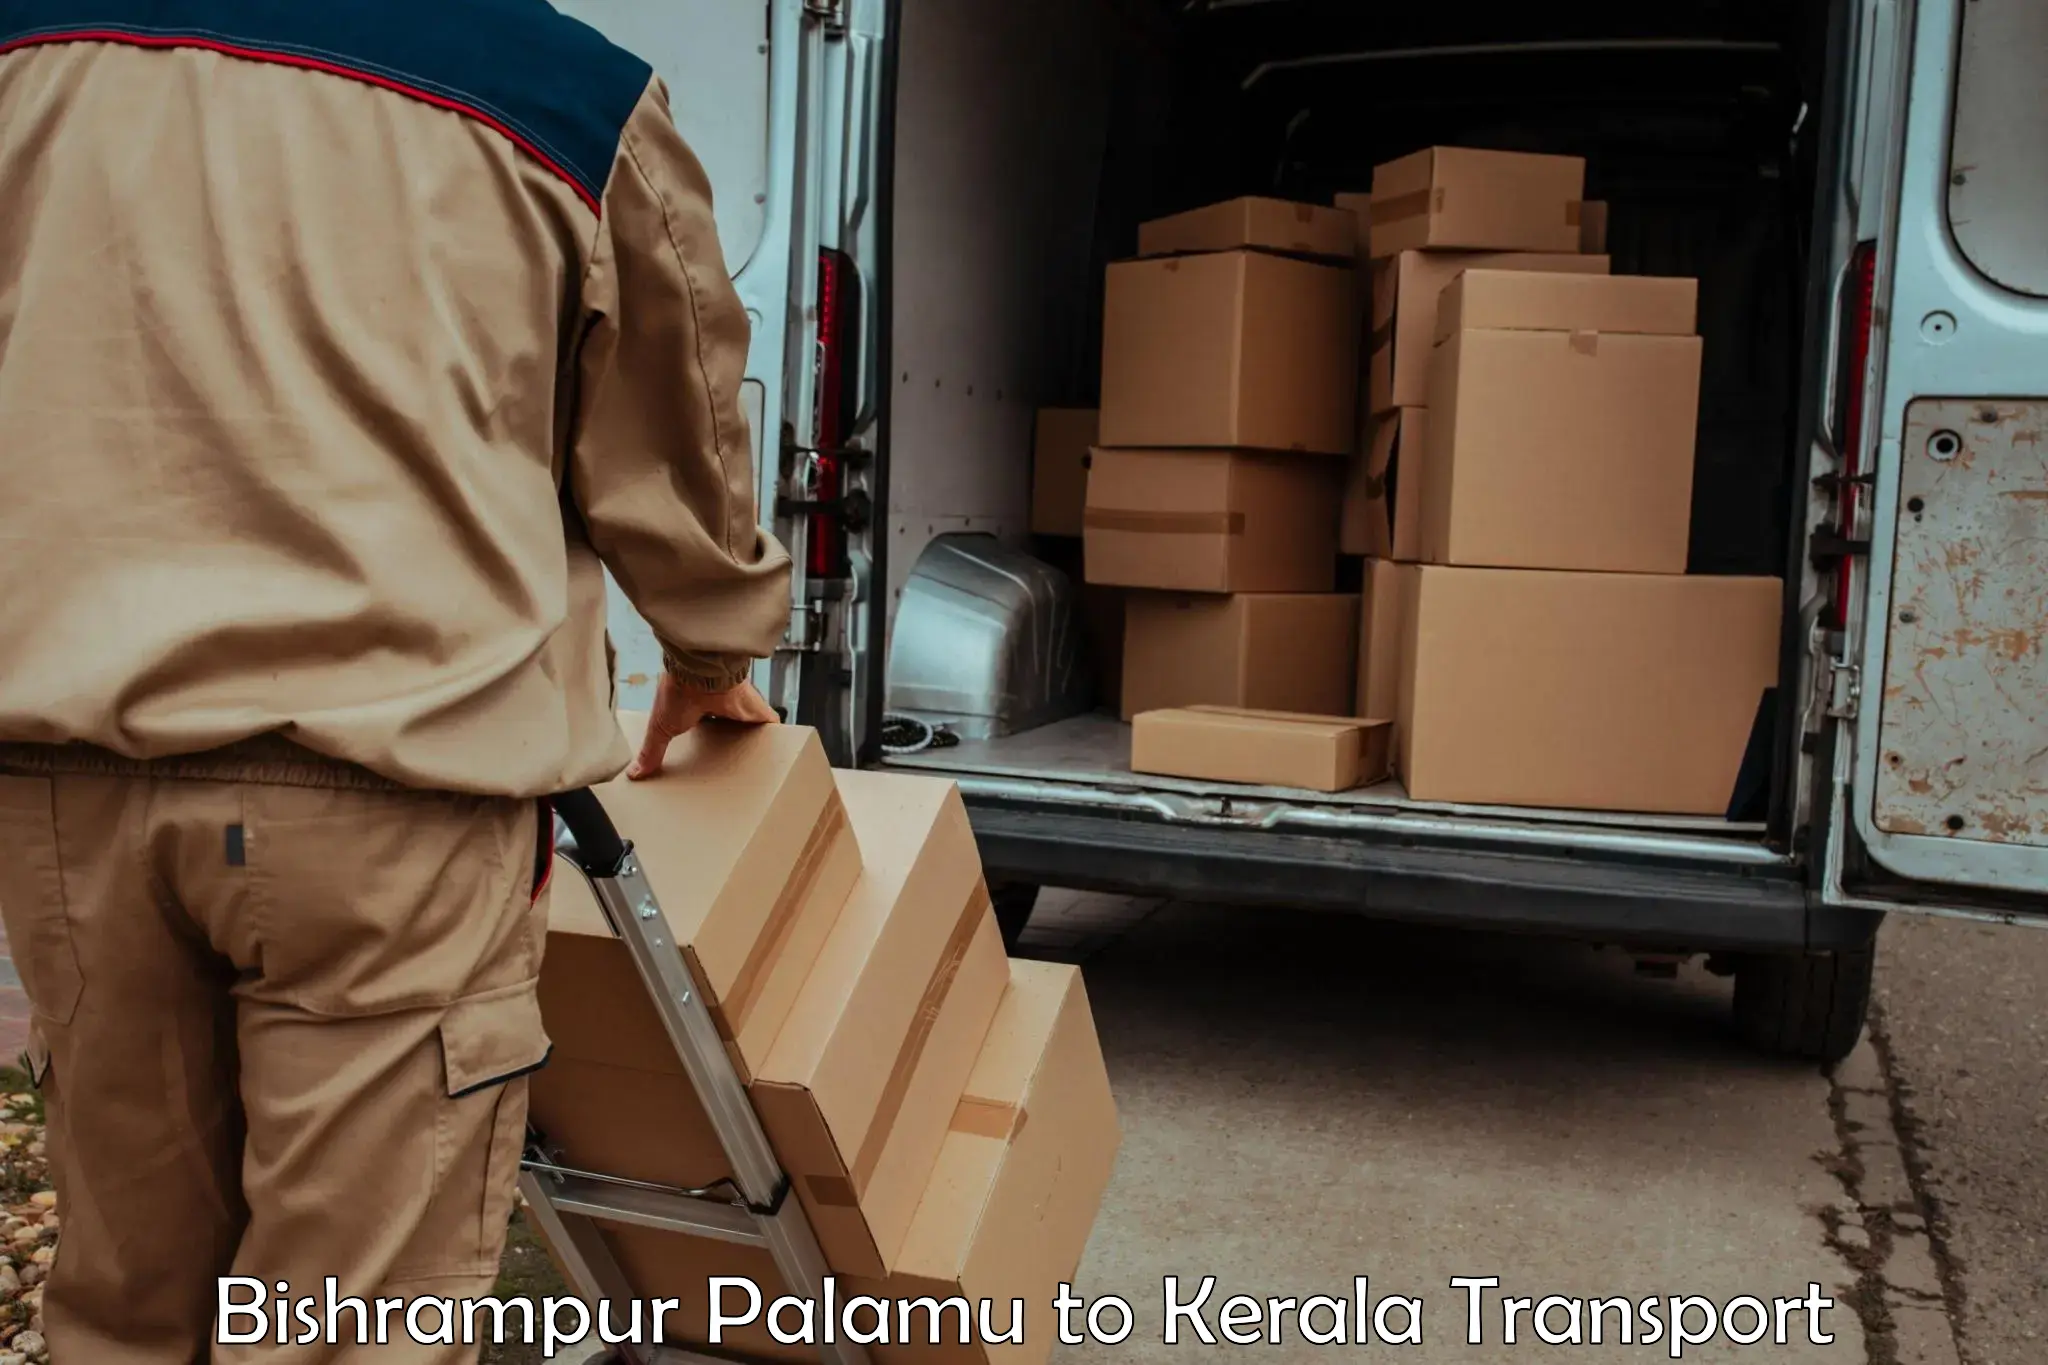 Daily parcel service transport Bishrampur Palamu to Kerala